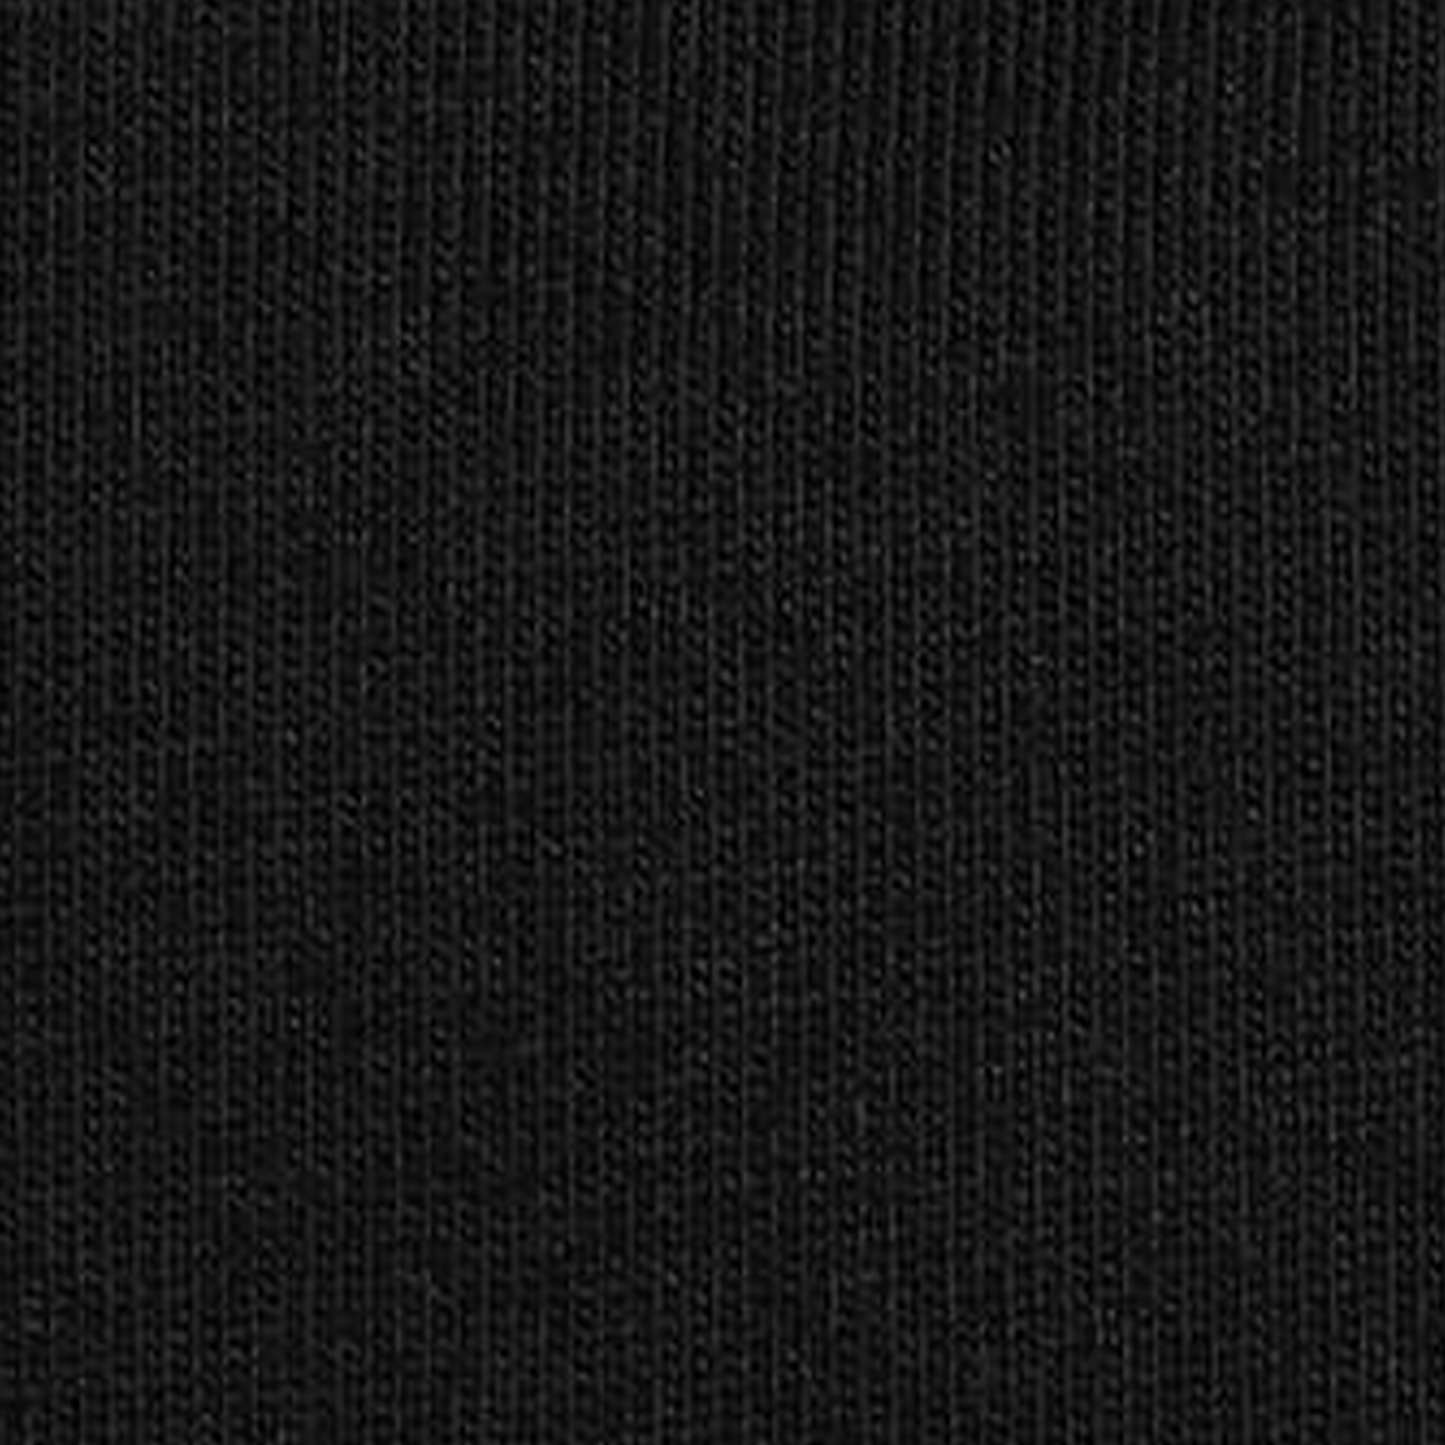 Balenciaga Embroidered Double B Logo Tee Black